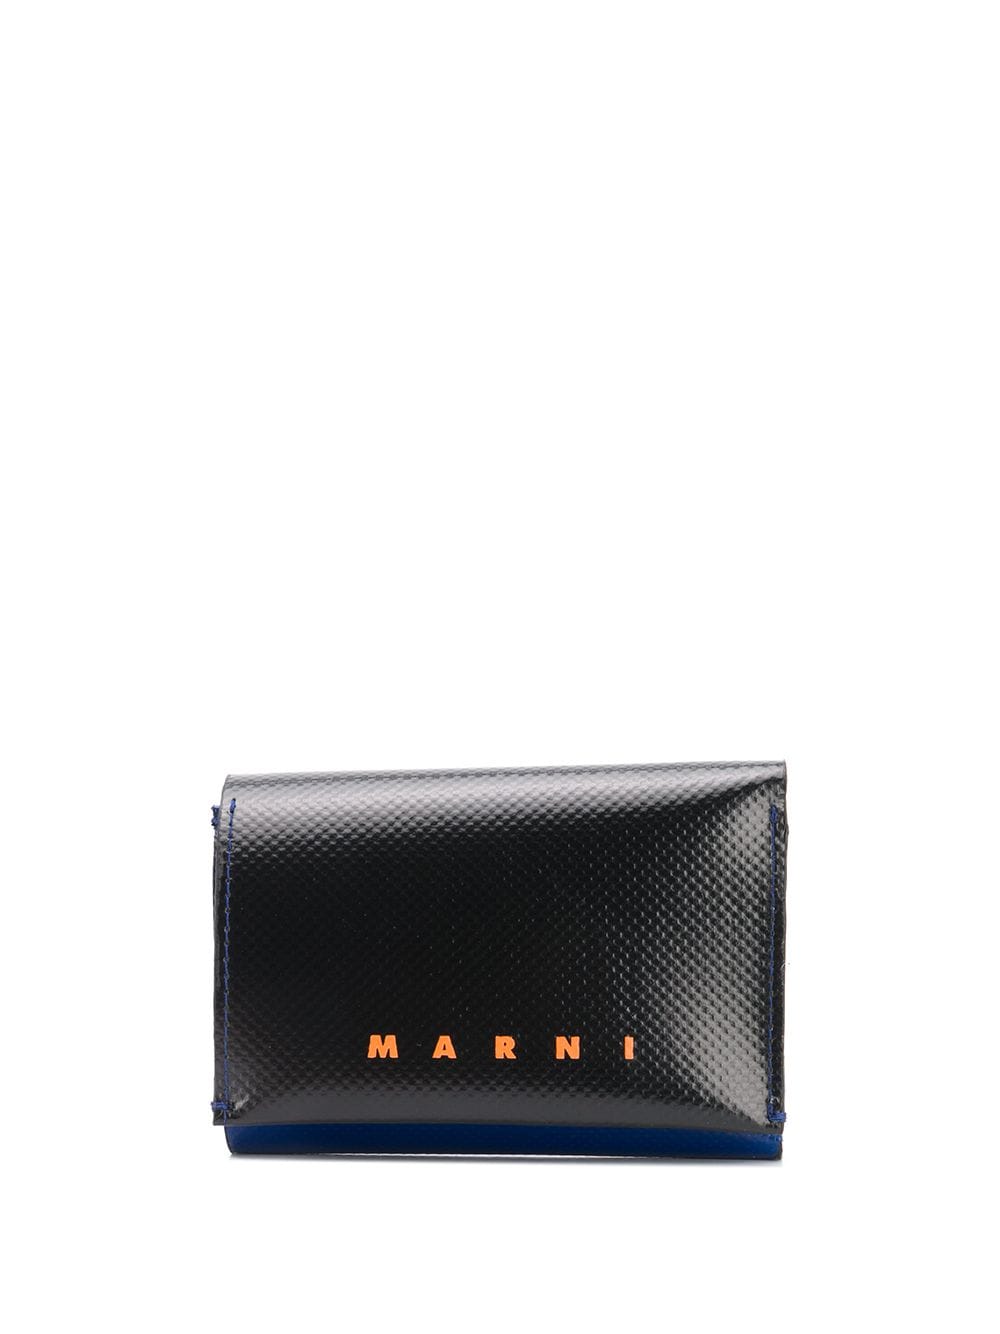 фото Marni двухцветный кошелек с логотипом